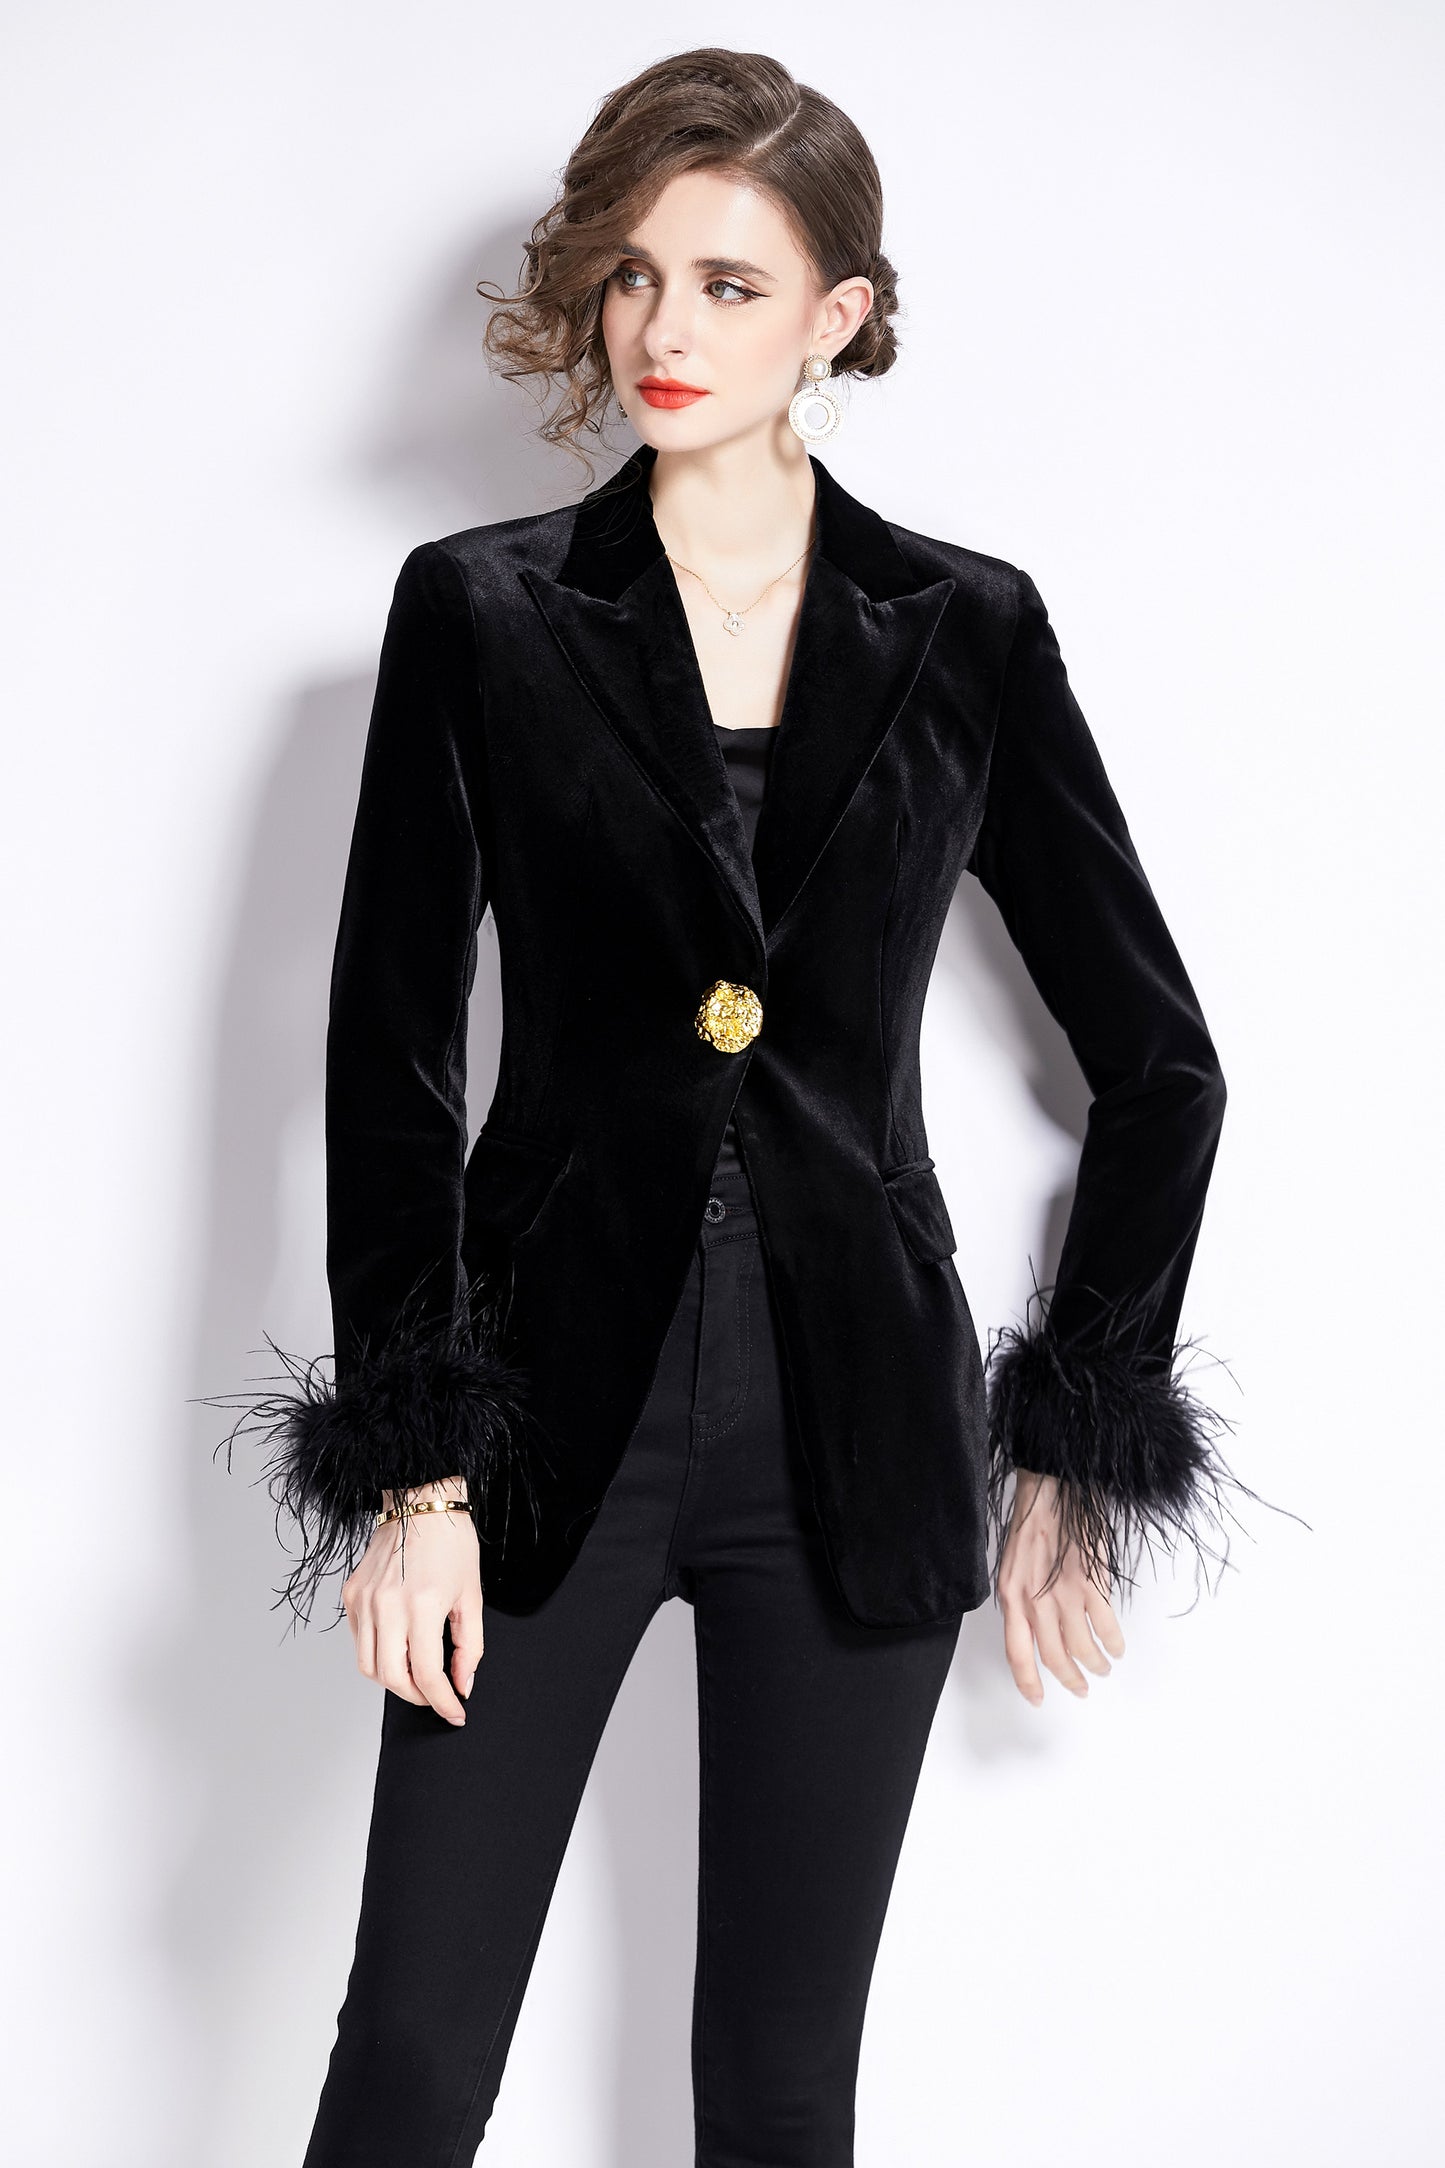 Women's Suit velvet Long Sleeve Blazer Jacket Whith Pocket